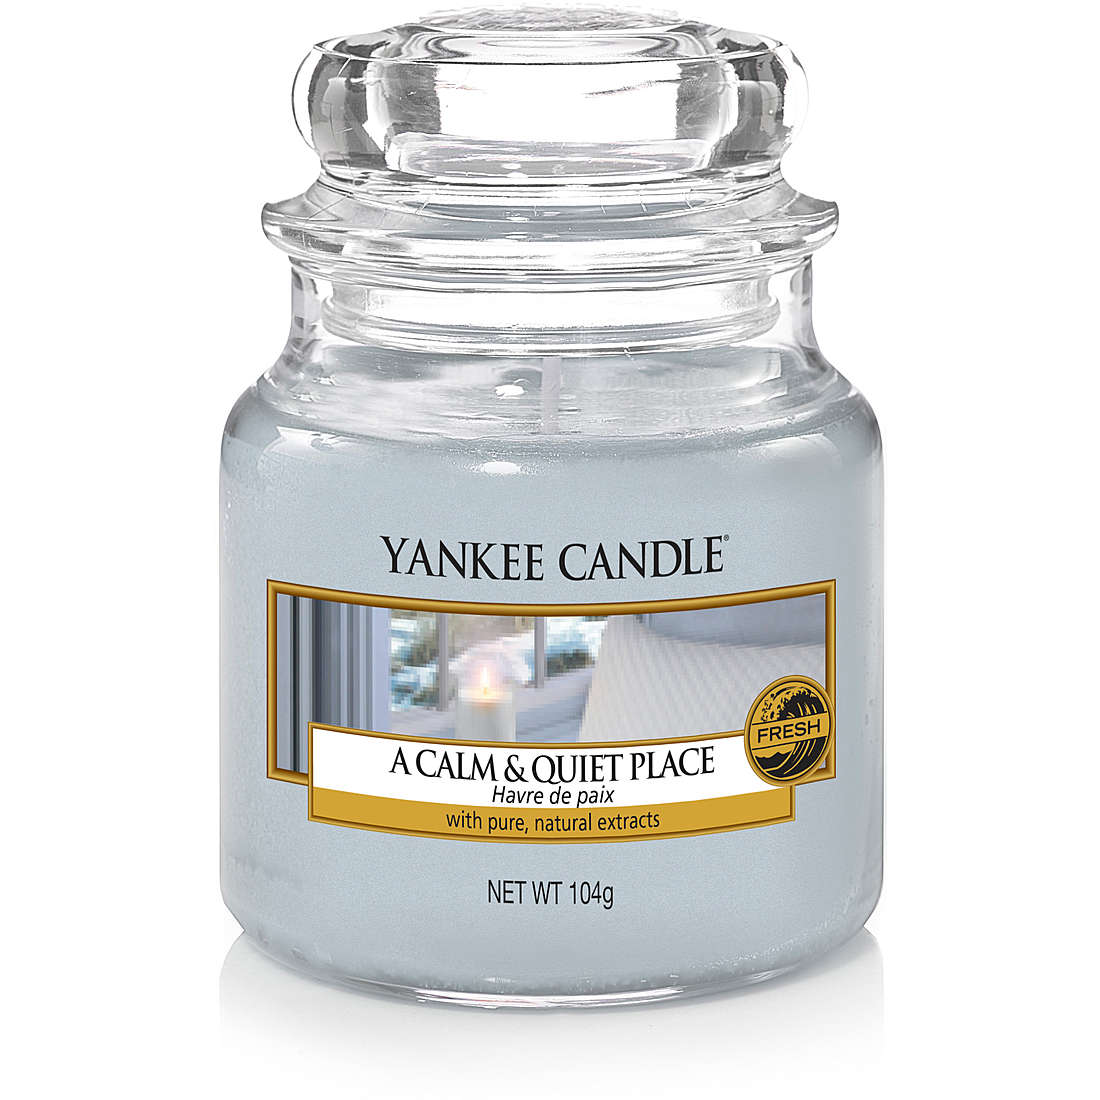 Candela Yankee Candle Giara, Piccola colore Grigio/Argento 1577137E